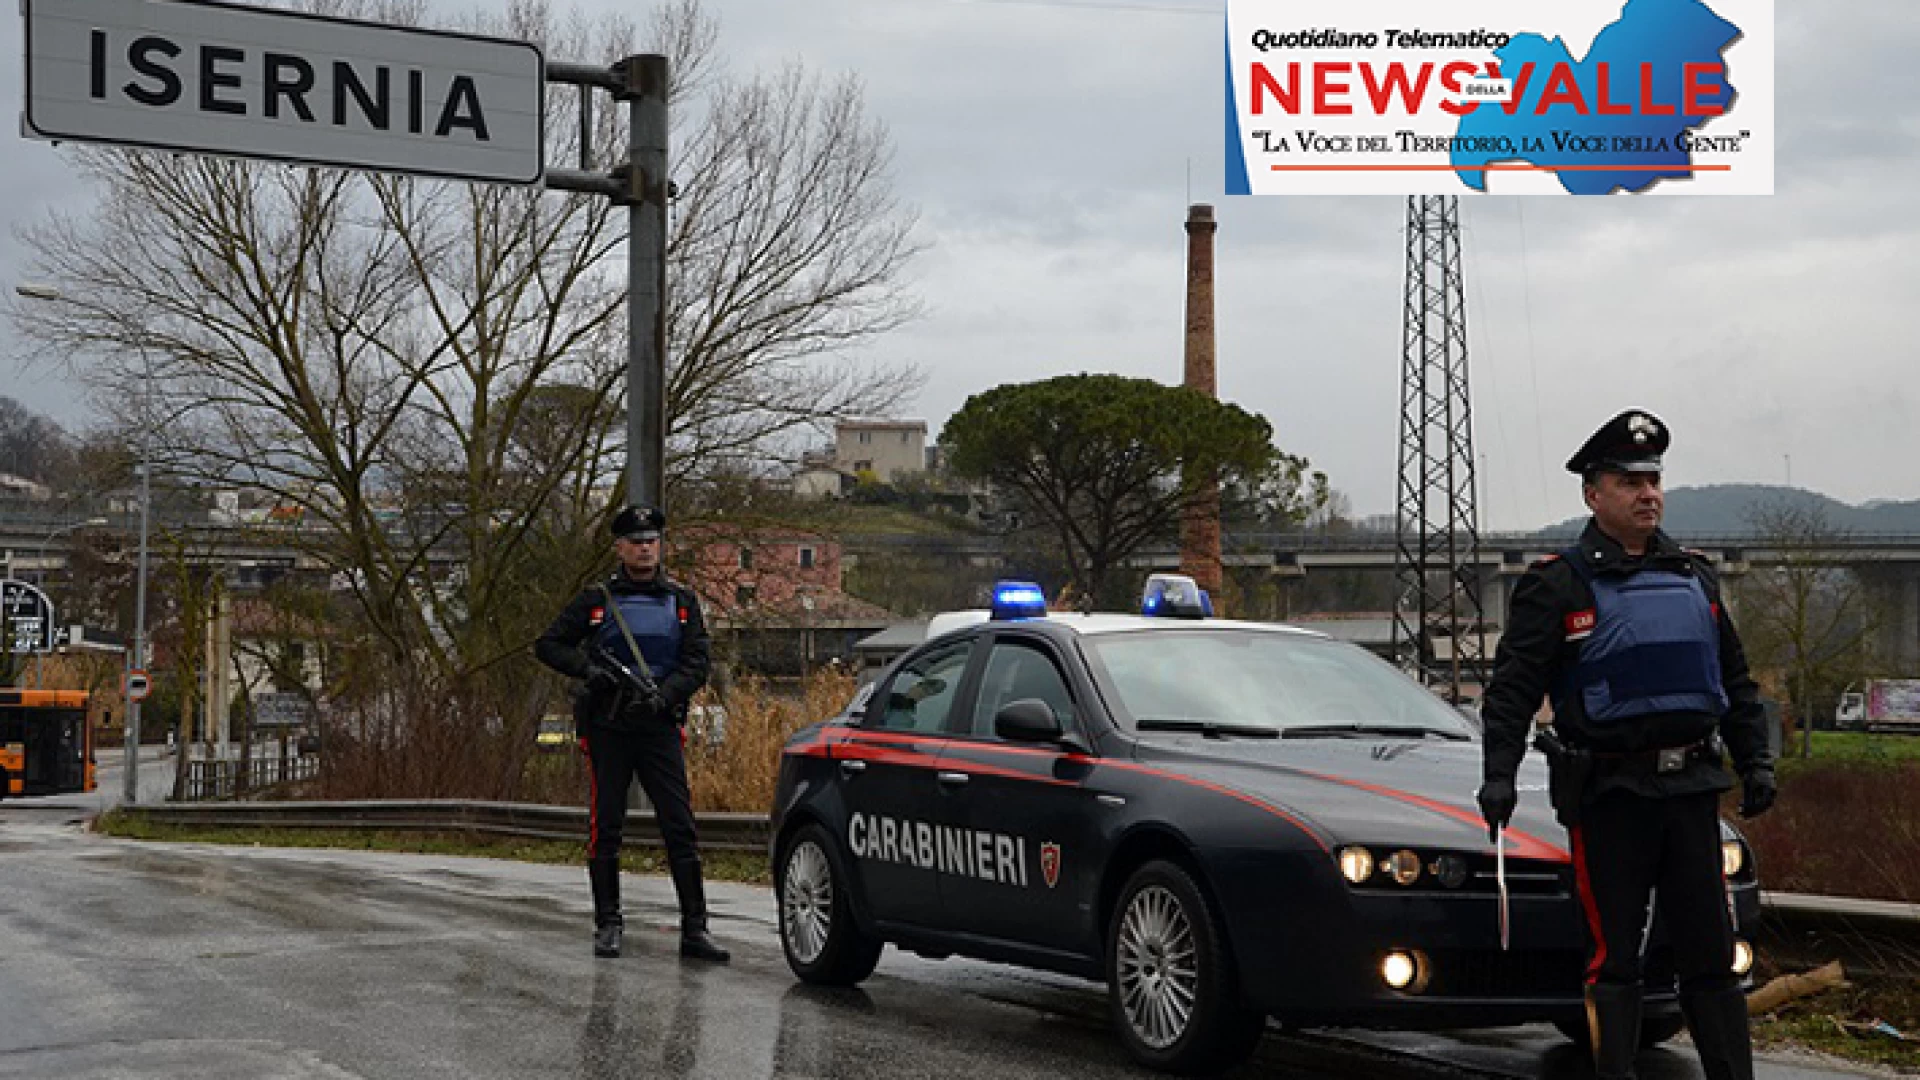 Isernia: I Carabinieri arrestano  pregiudicato campano.